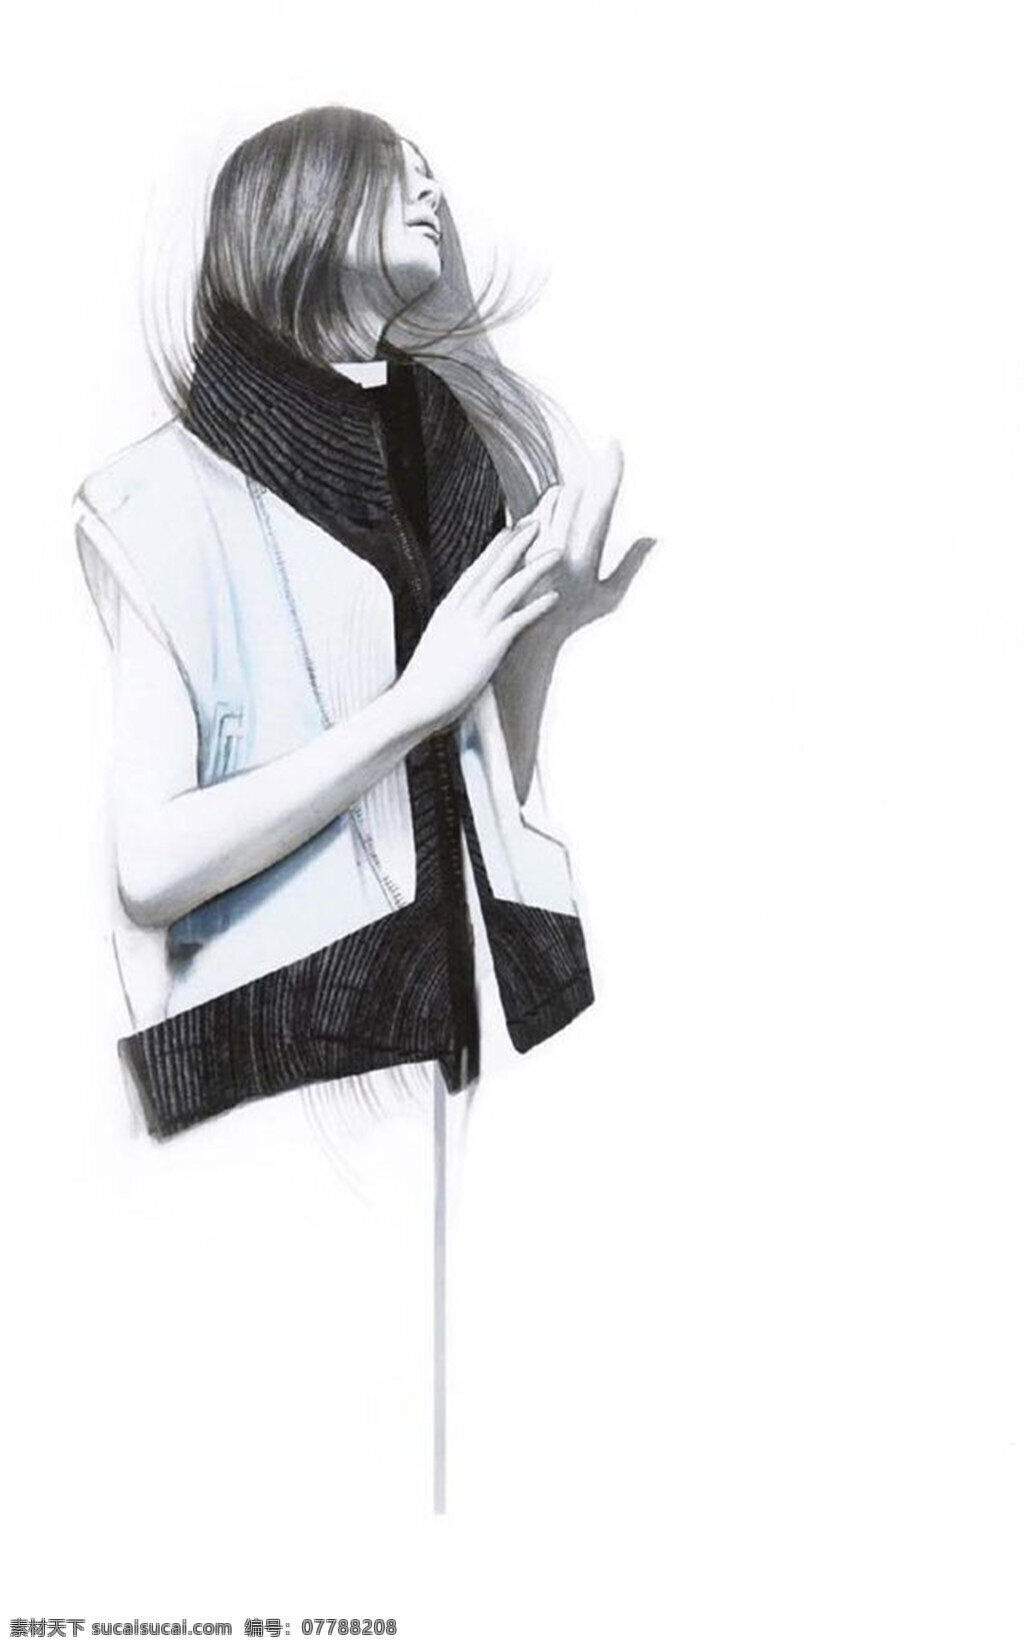 简约 风格 无袖 外套 女装 效果图 服饰设计 服装效果图 黑色围巾